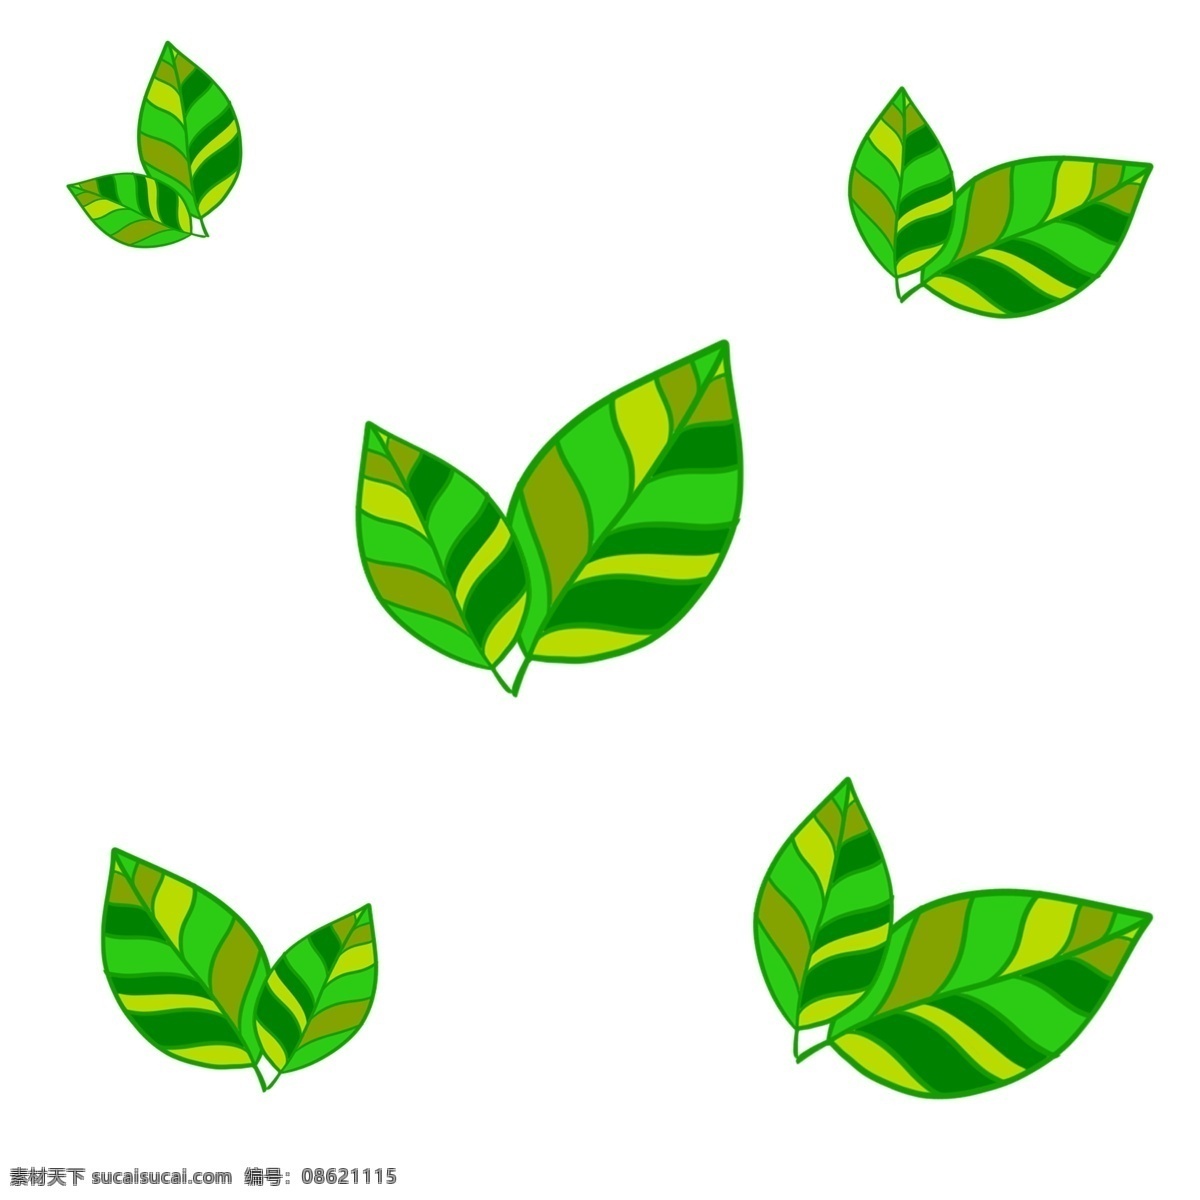 绿色植物 叶子 五彩 五彩叶子 绿色 植物 中药 墨绿 黑色 黄色 嫩绿色 咖啡色 白色 装饰 贴画